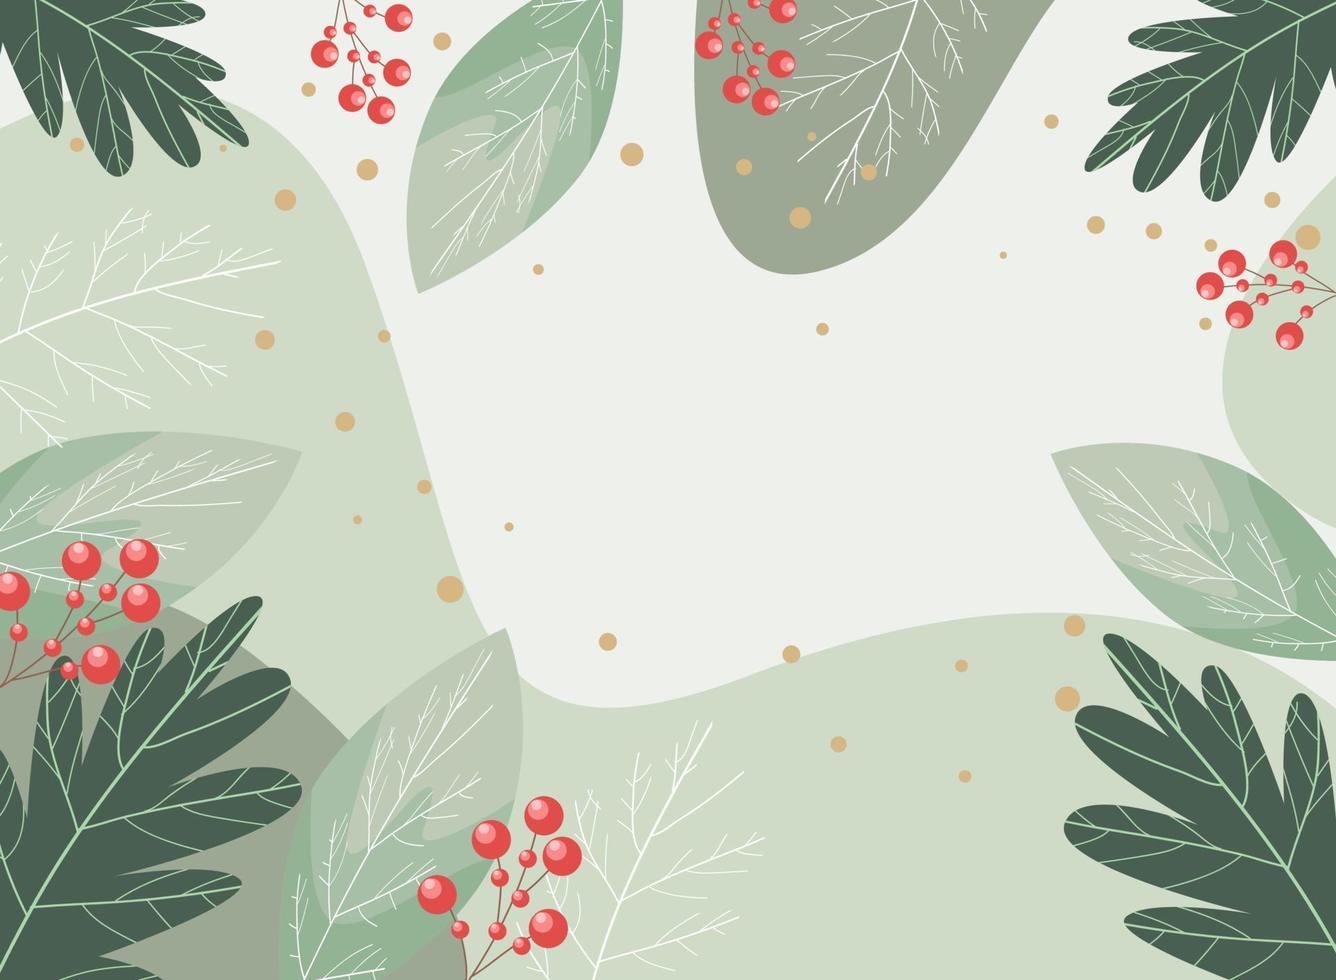 modern abstract winter achtergrond geschikt voor winter bruiloft en vrolijk Kerstmis kaart vector